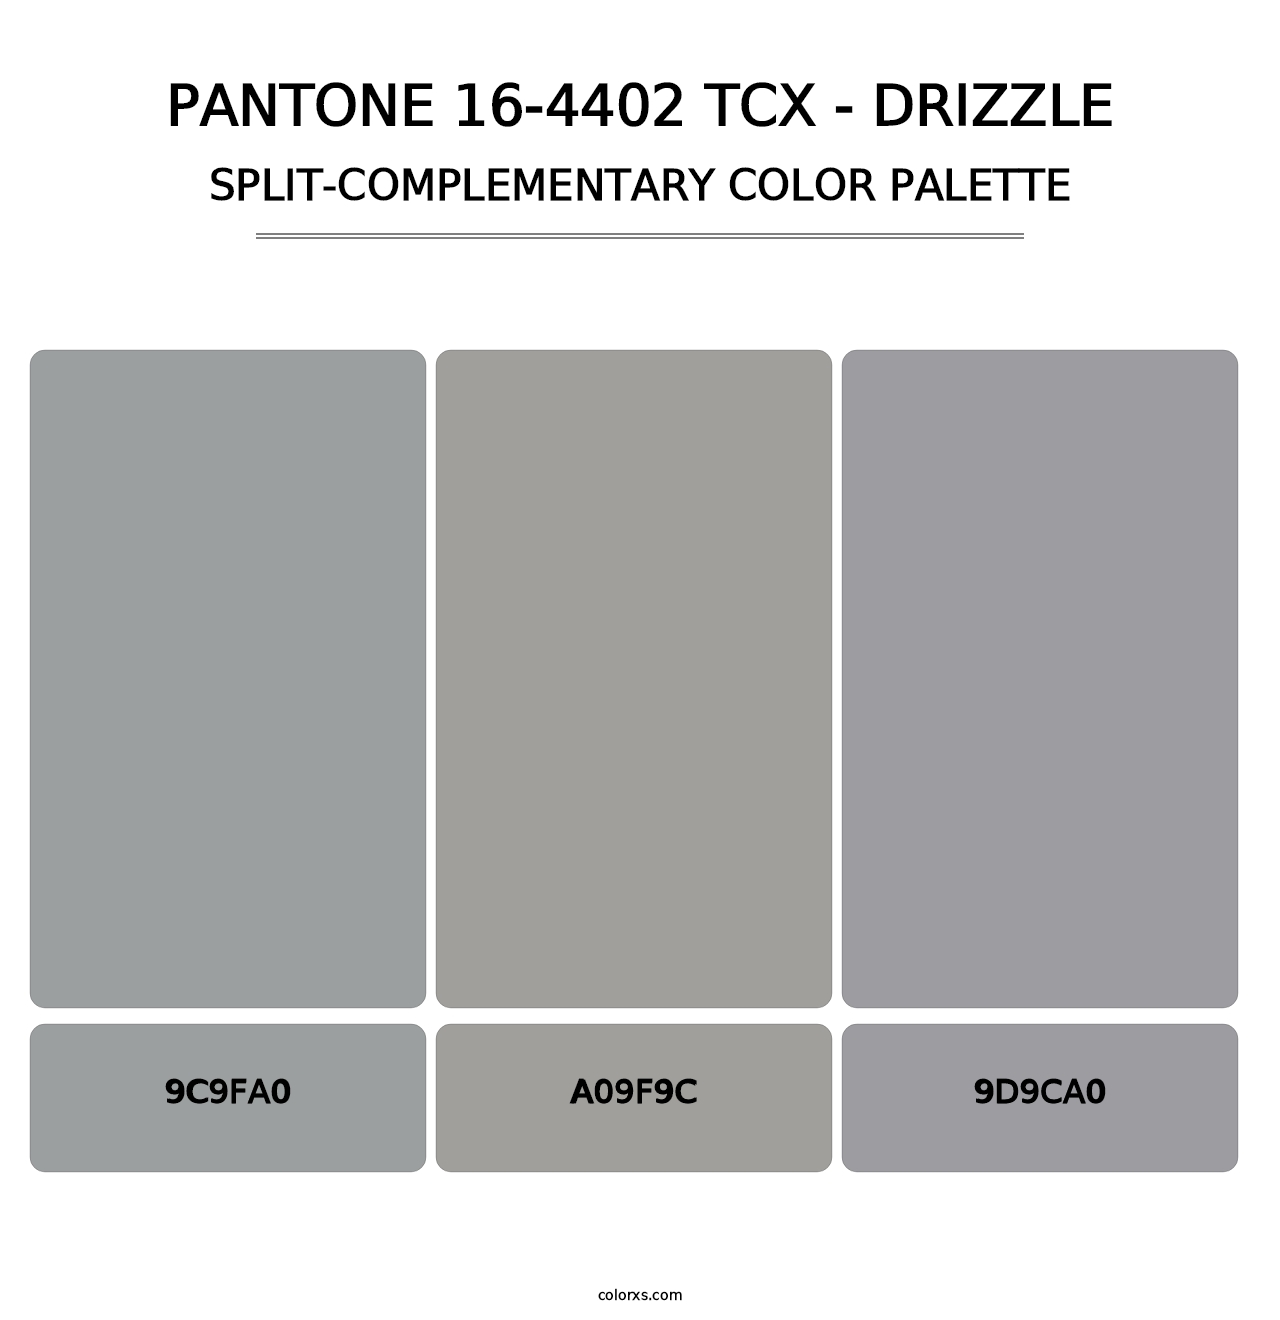 PANTONE 16-4402 TCX - Drizzle - Split-Complementary Color Palette